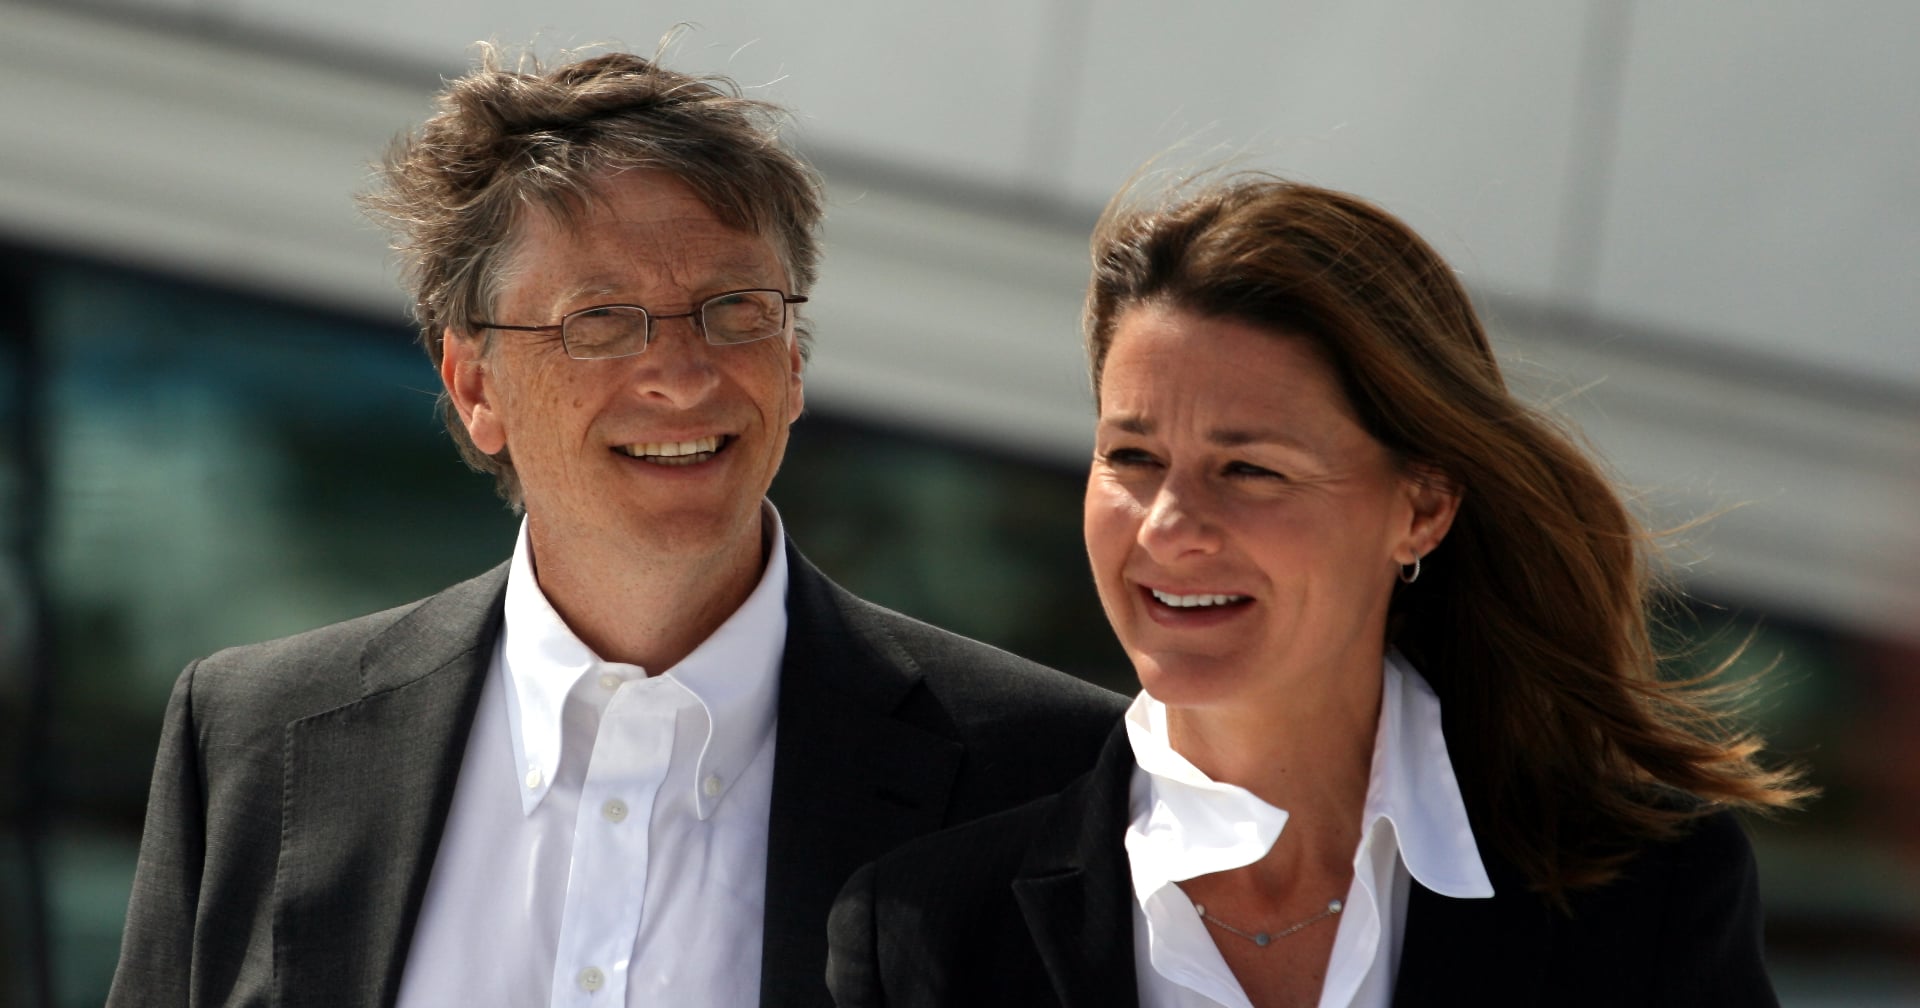 Bill และ Melinda Gates ประกาศแยกทางกัน หลังแต่งงานมา 27 ปี